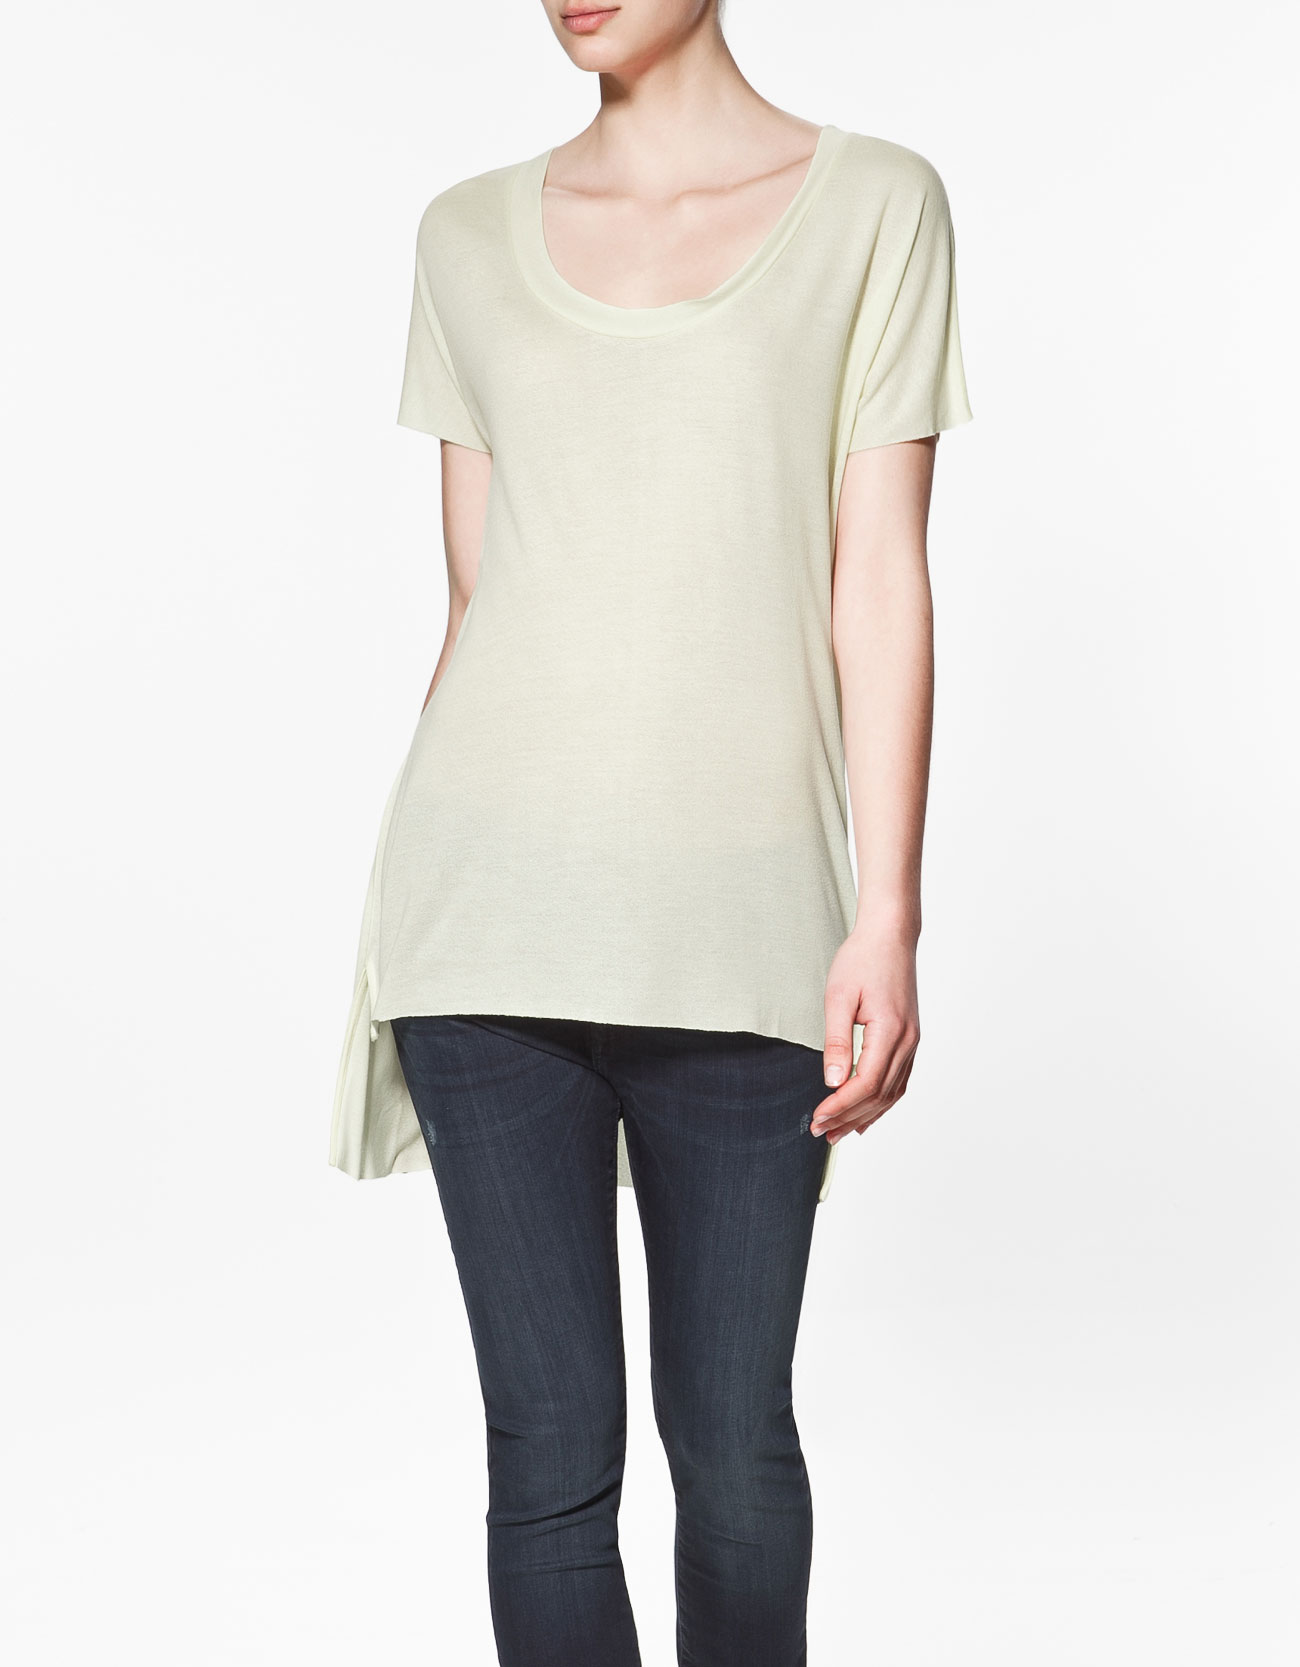 Zara Crepe T-Shirt in Beige (321) | Lyst